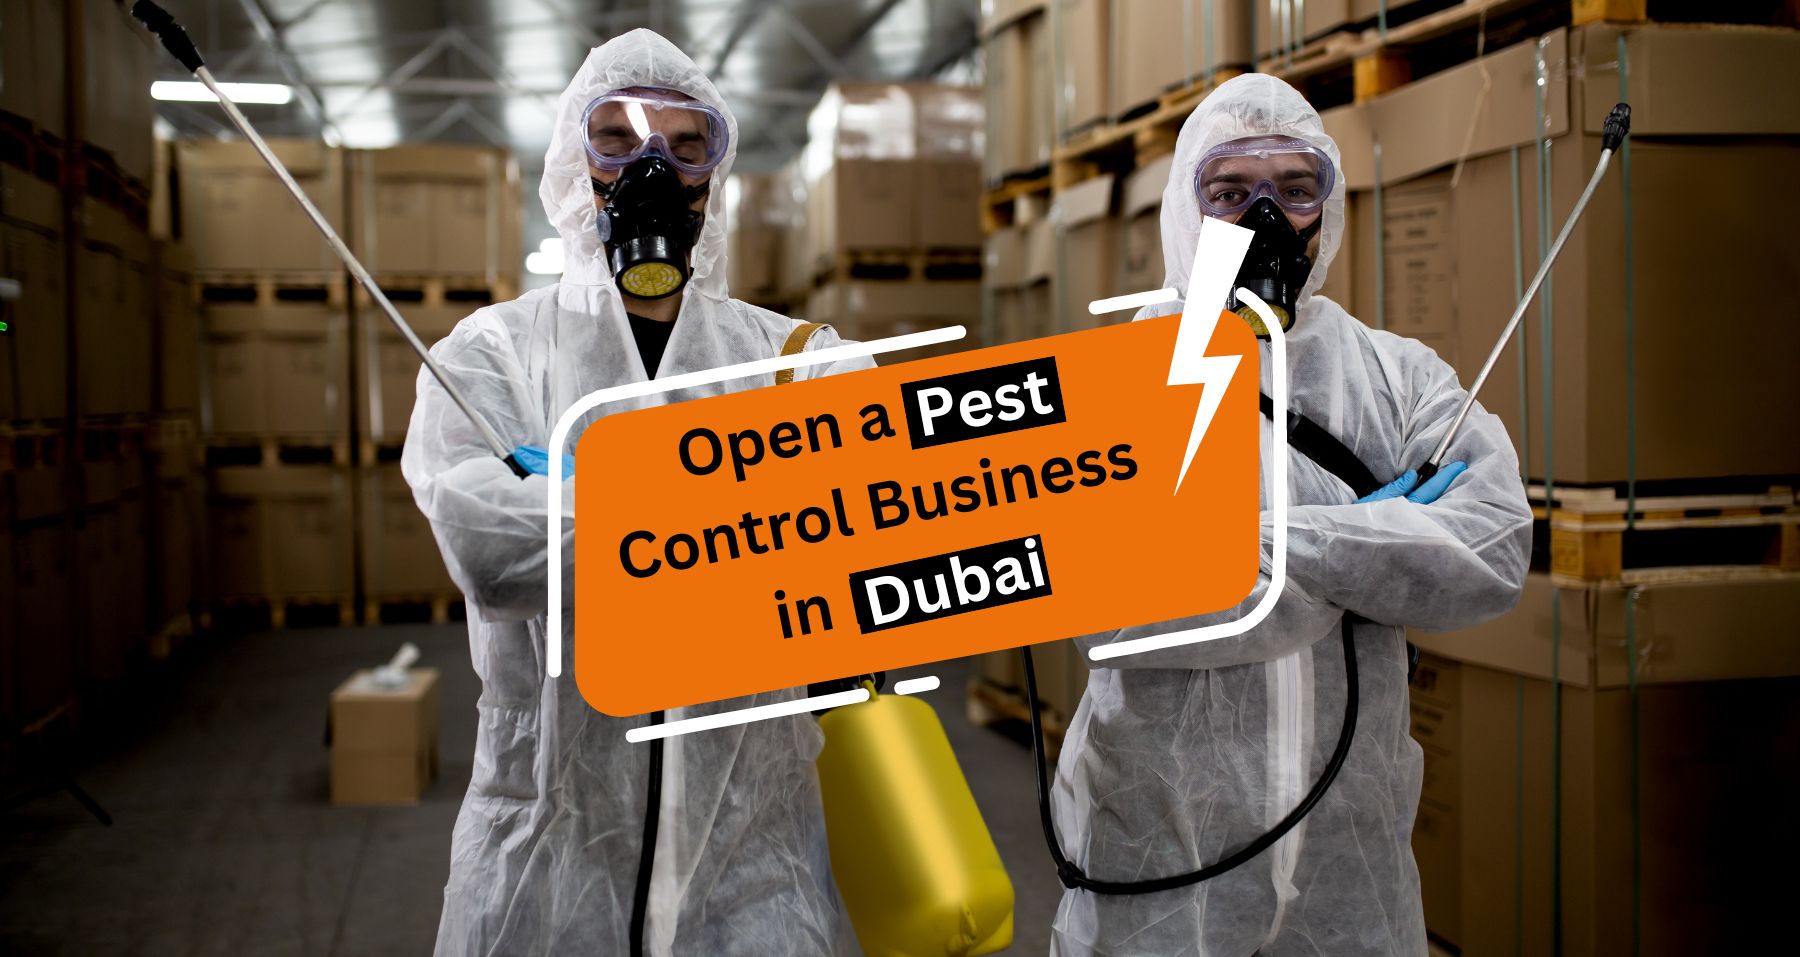 Open a Pest Control Business in Dubai